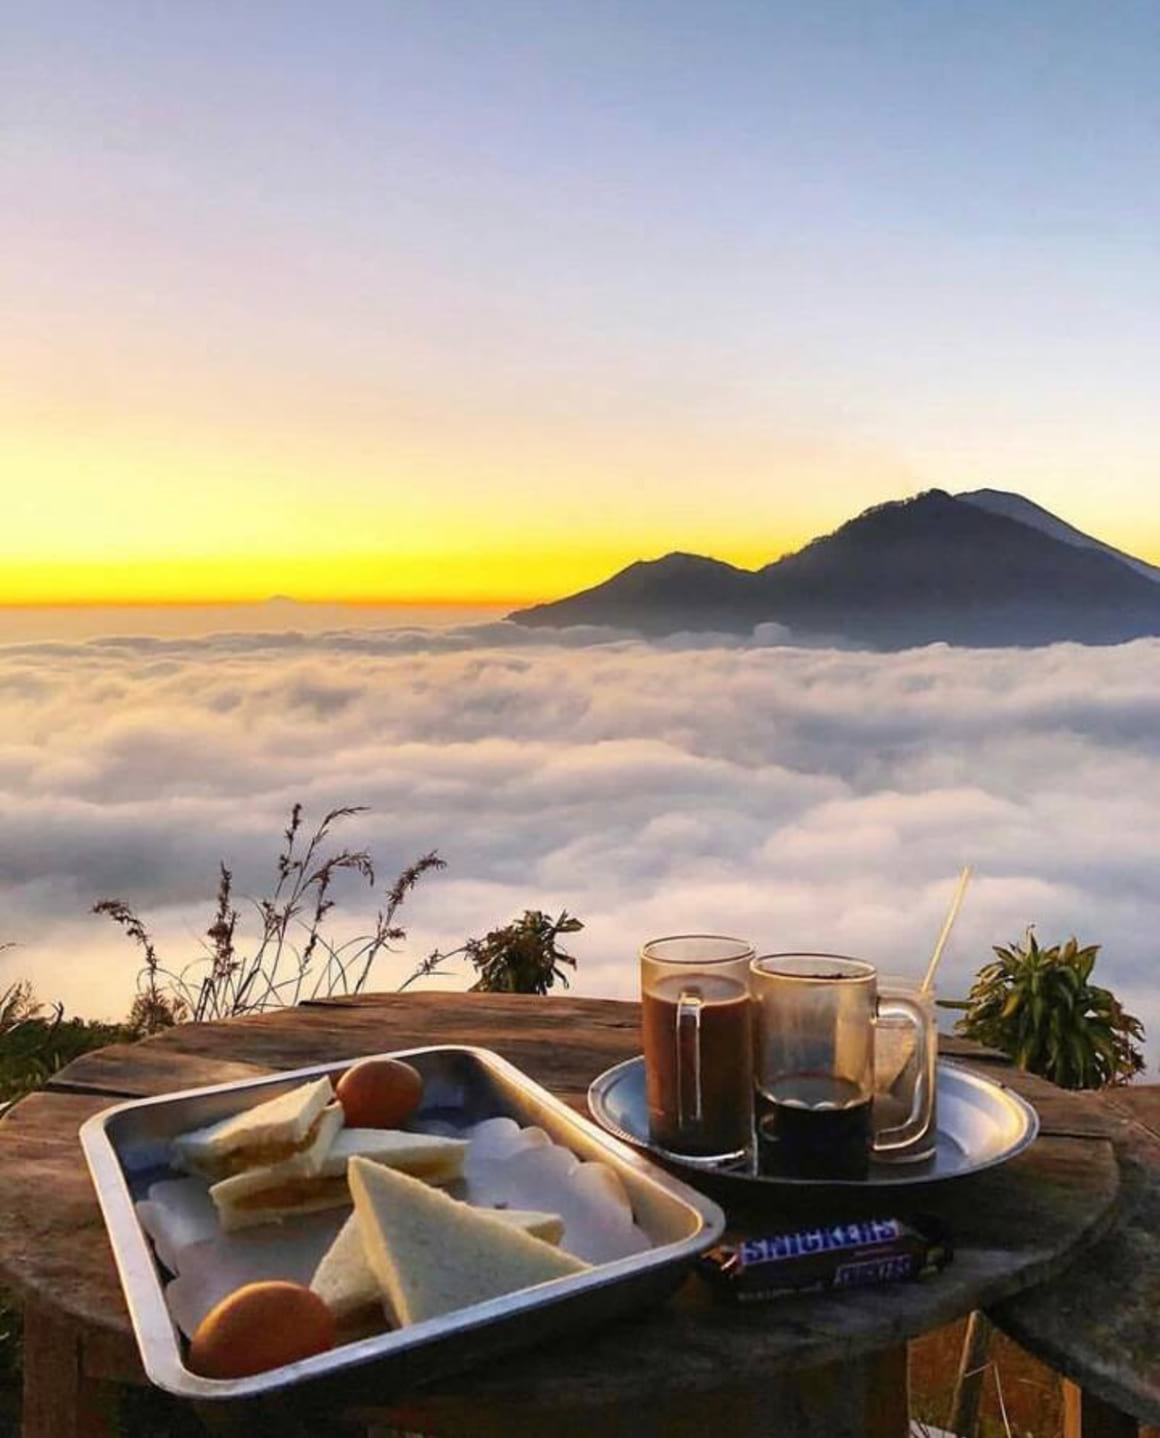 Mount Batur sunrise tour